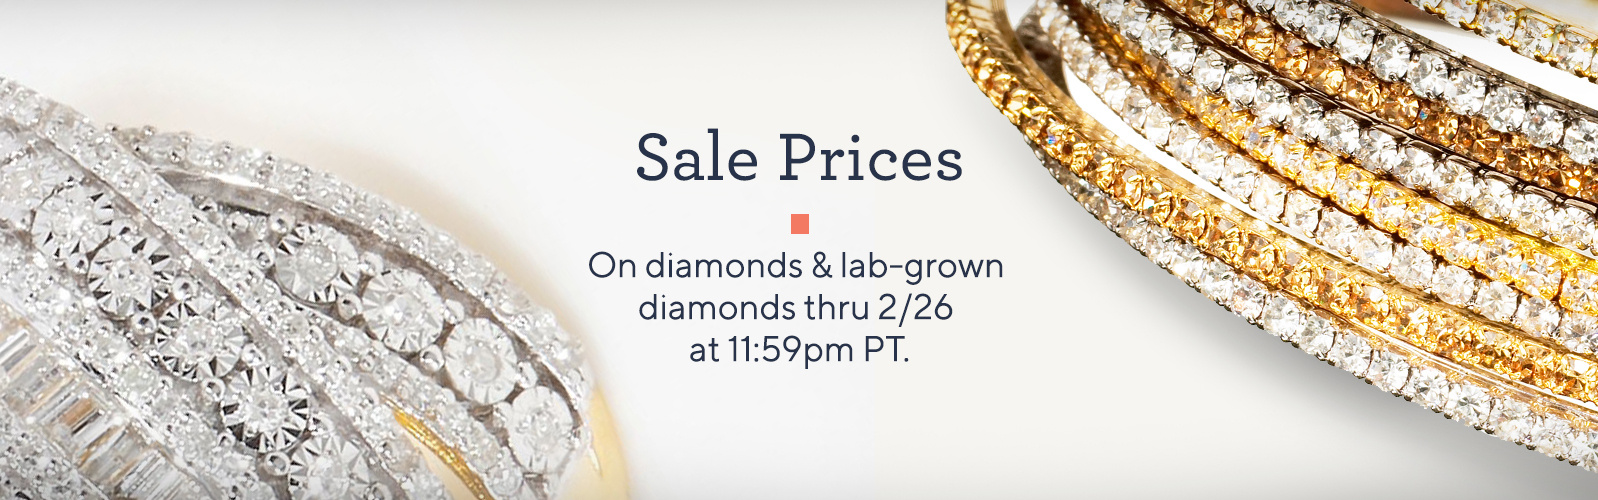 Sale Prices On diamonds & lab-grown diamonds thru 2/26 at 11:59pm PT.